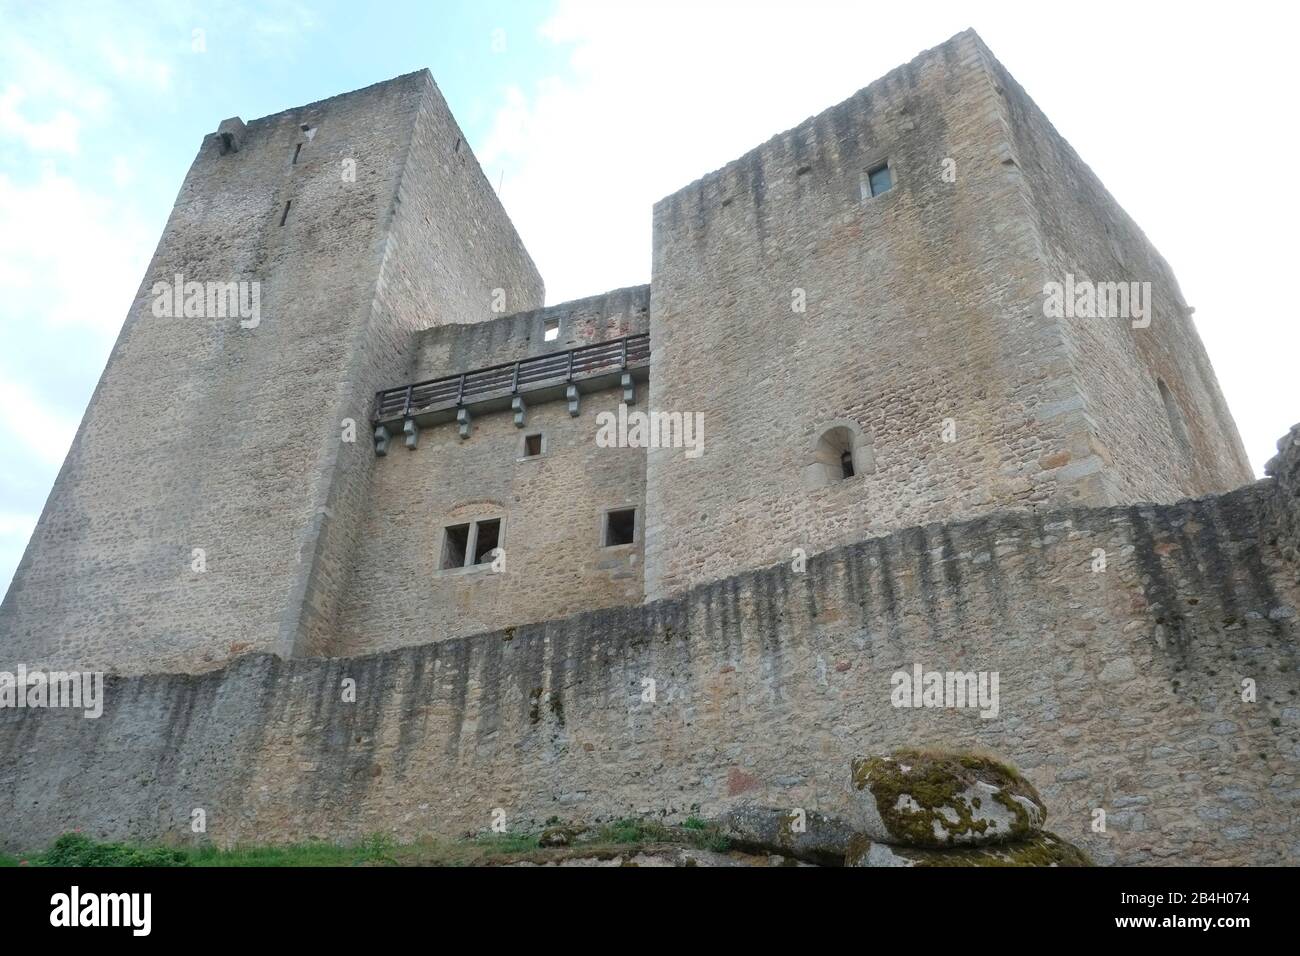 Castello di Landstejn, Repubblica Ceca, il Castello fu costruito all'inizio del 13th secolo probabilmente dal Moravo Premysiden come punto di appoggio per il territorio di Boemia, Moravia e Austria. Foto Stock